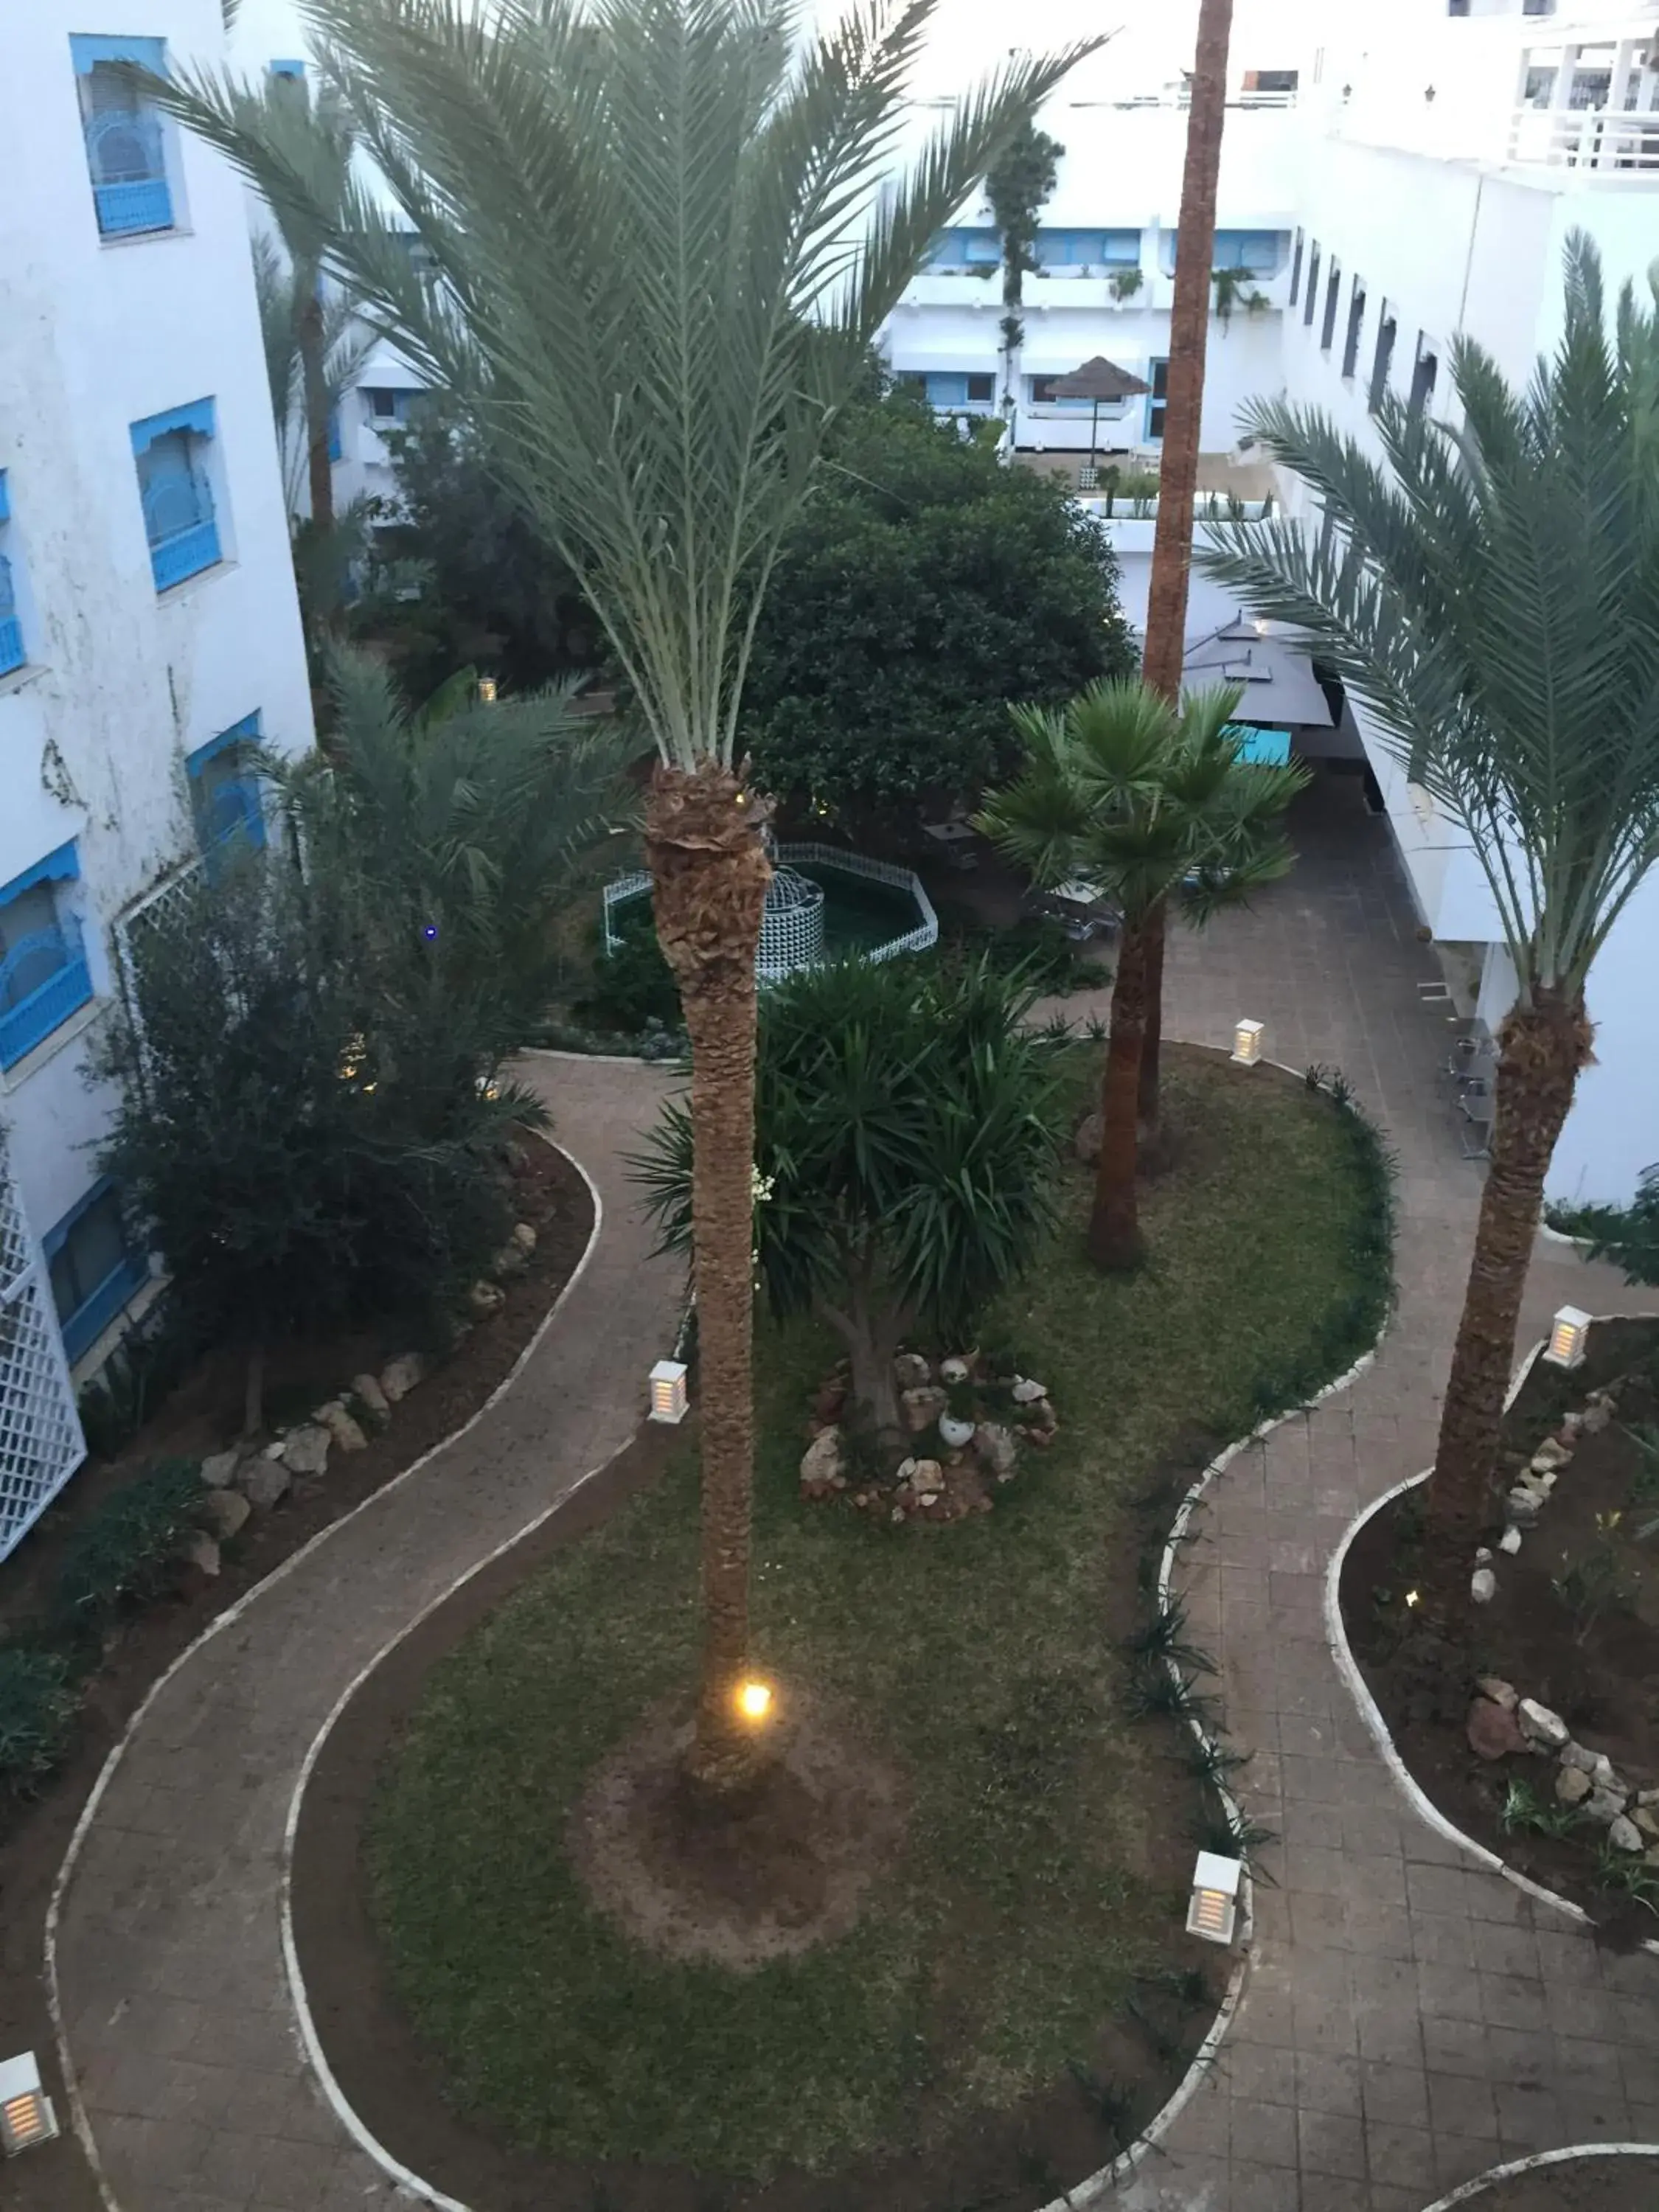 Garden in Hotel La Residence Hammamet